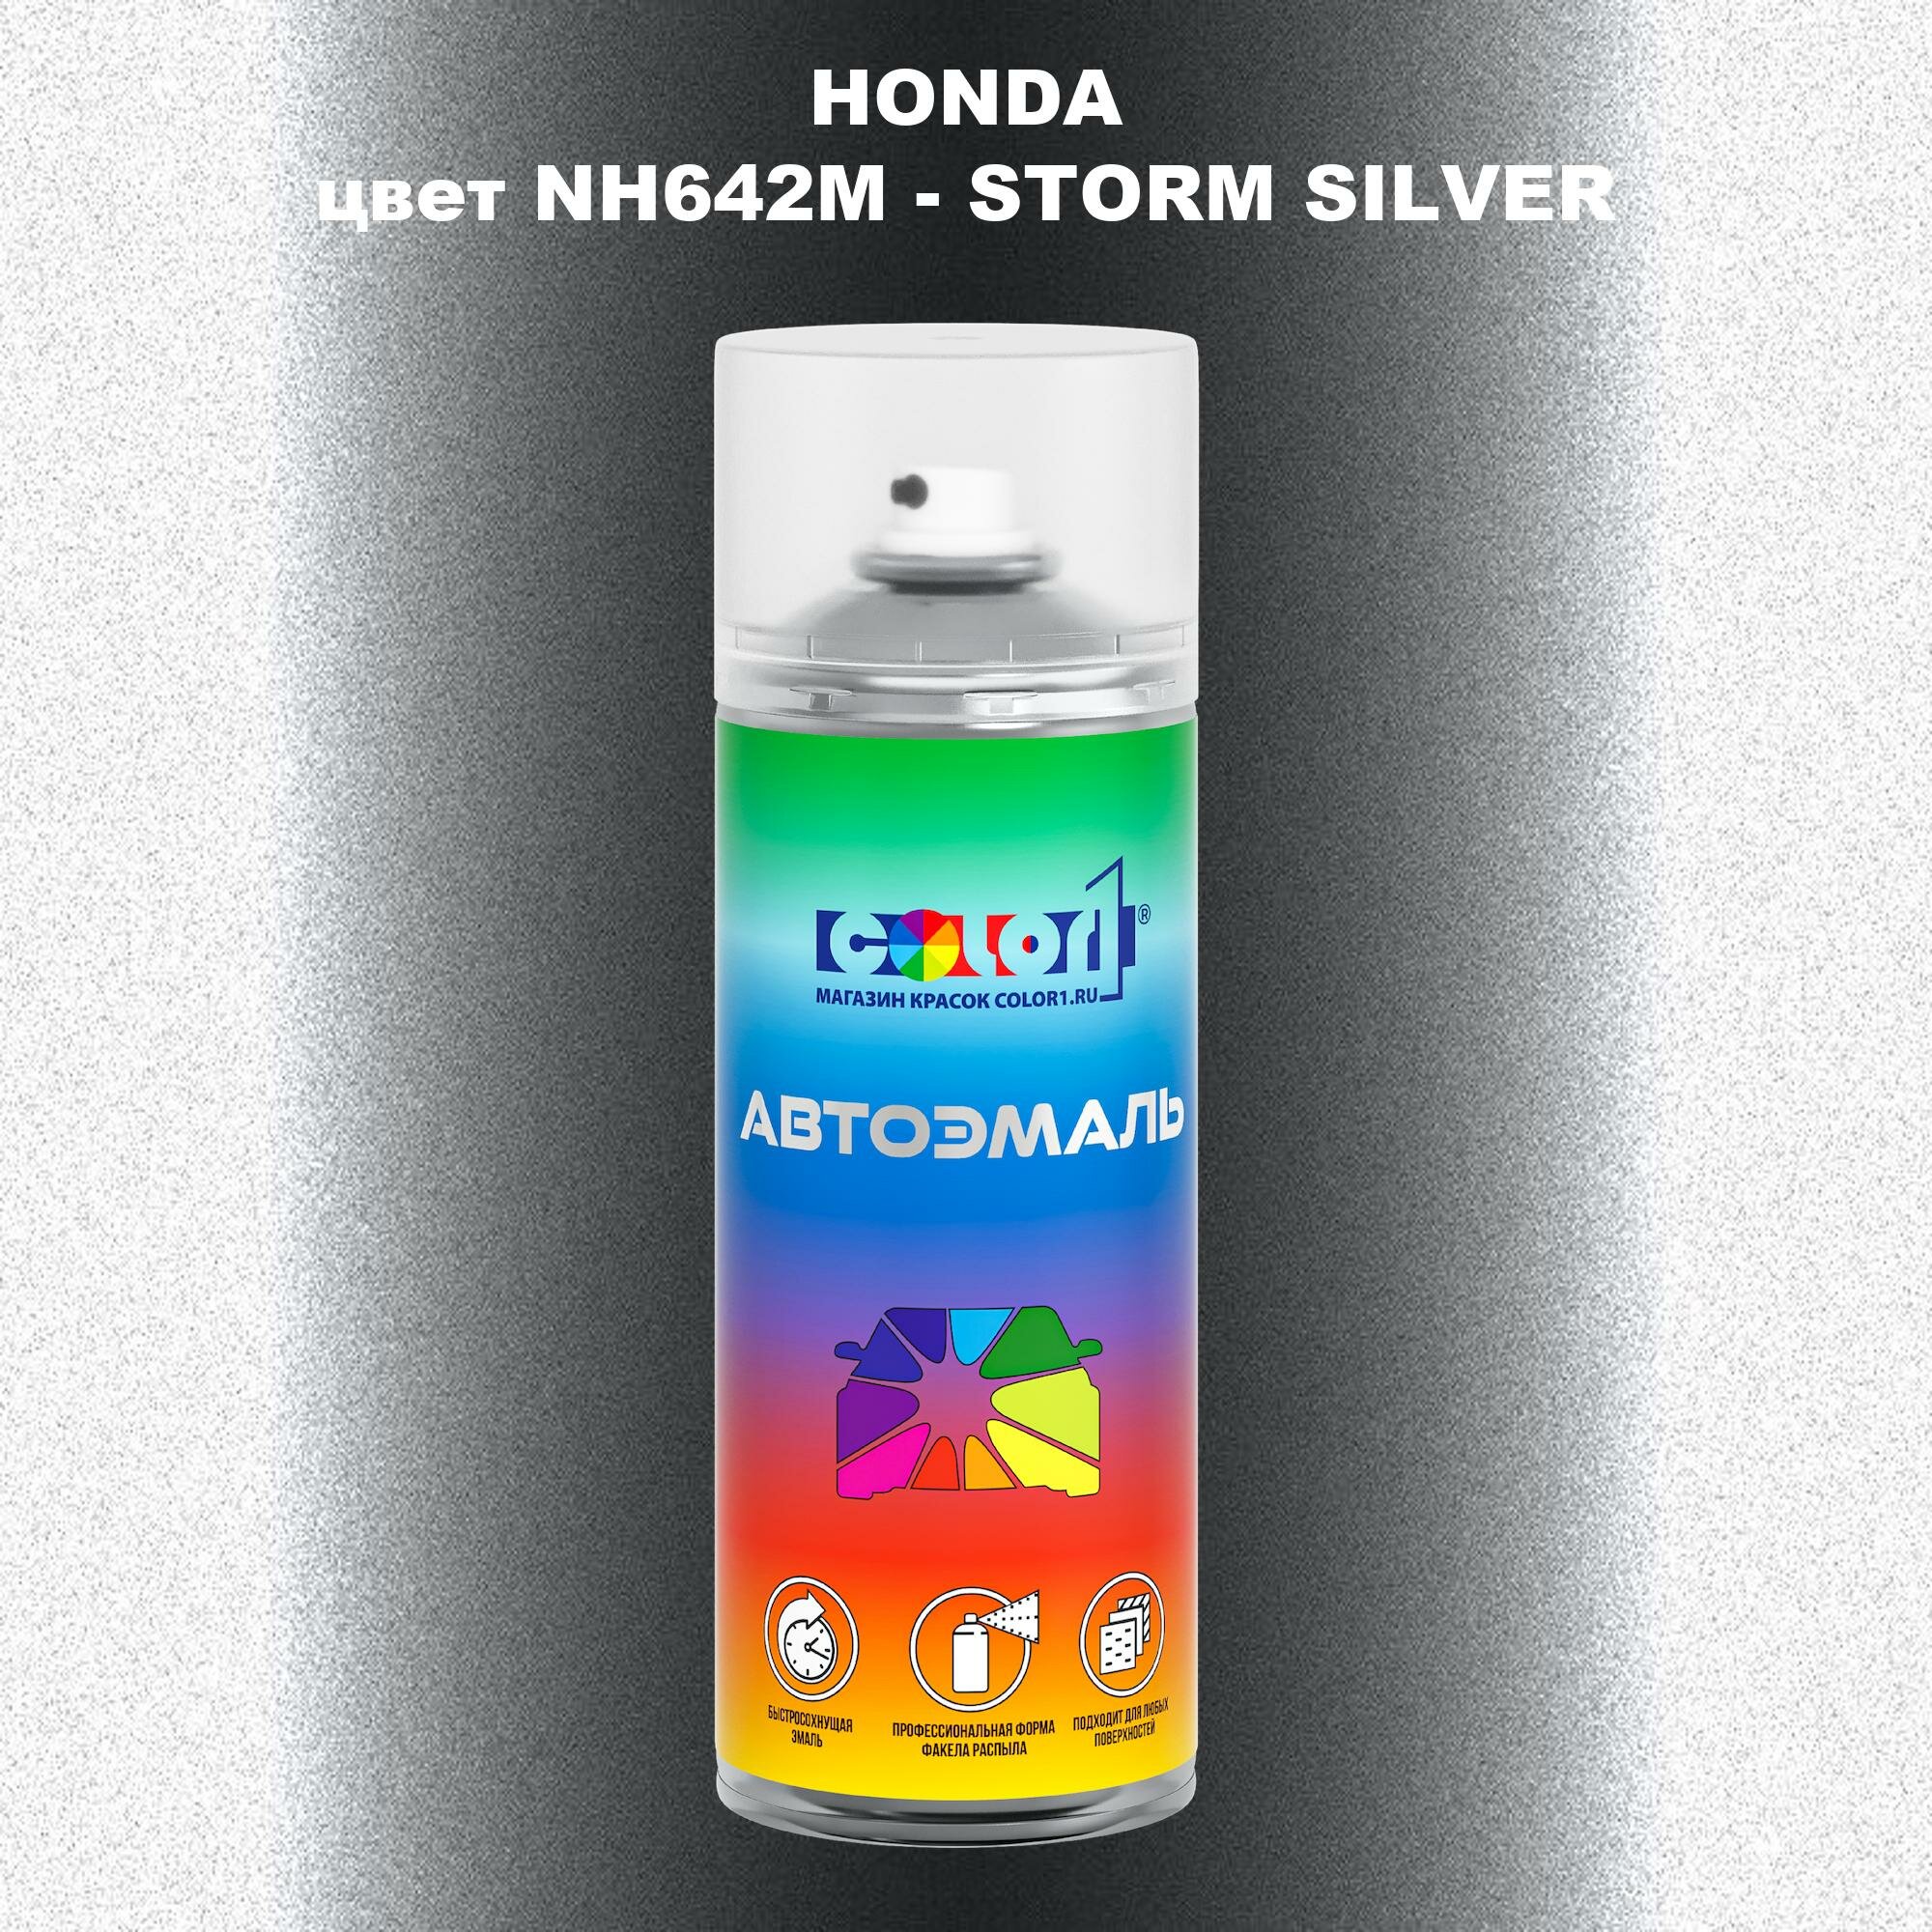 Аэрозольная краска COLOR1 для HONDA цвет NH642M - STORM SILVER